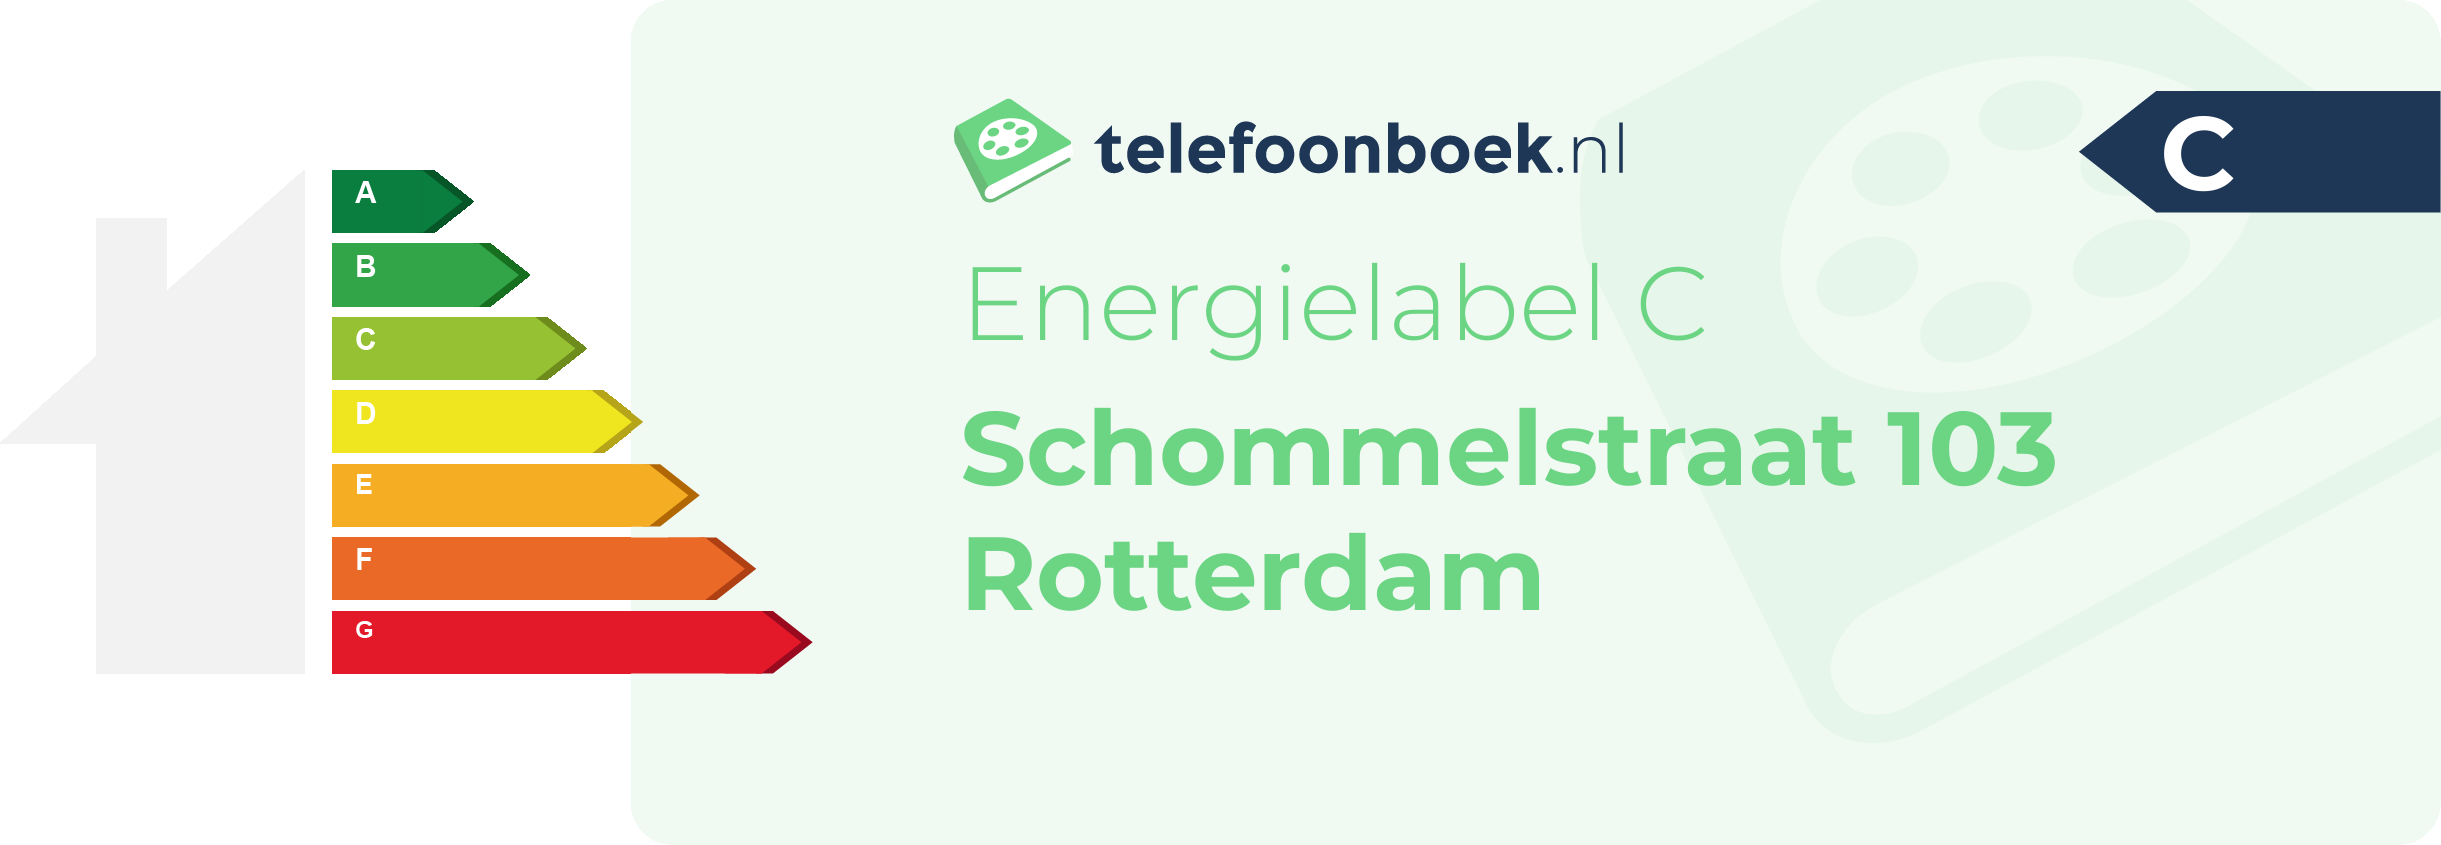 Energielabel Schommelstraat 103 Rotterdam